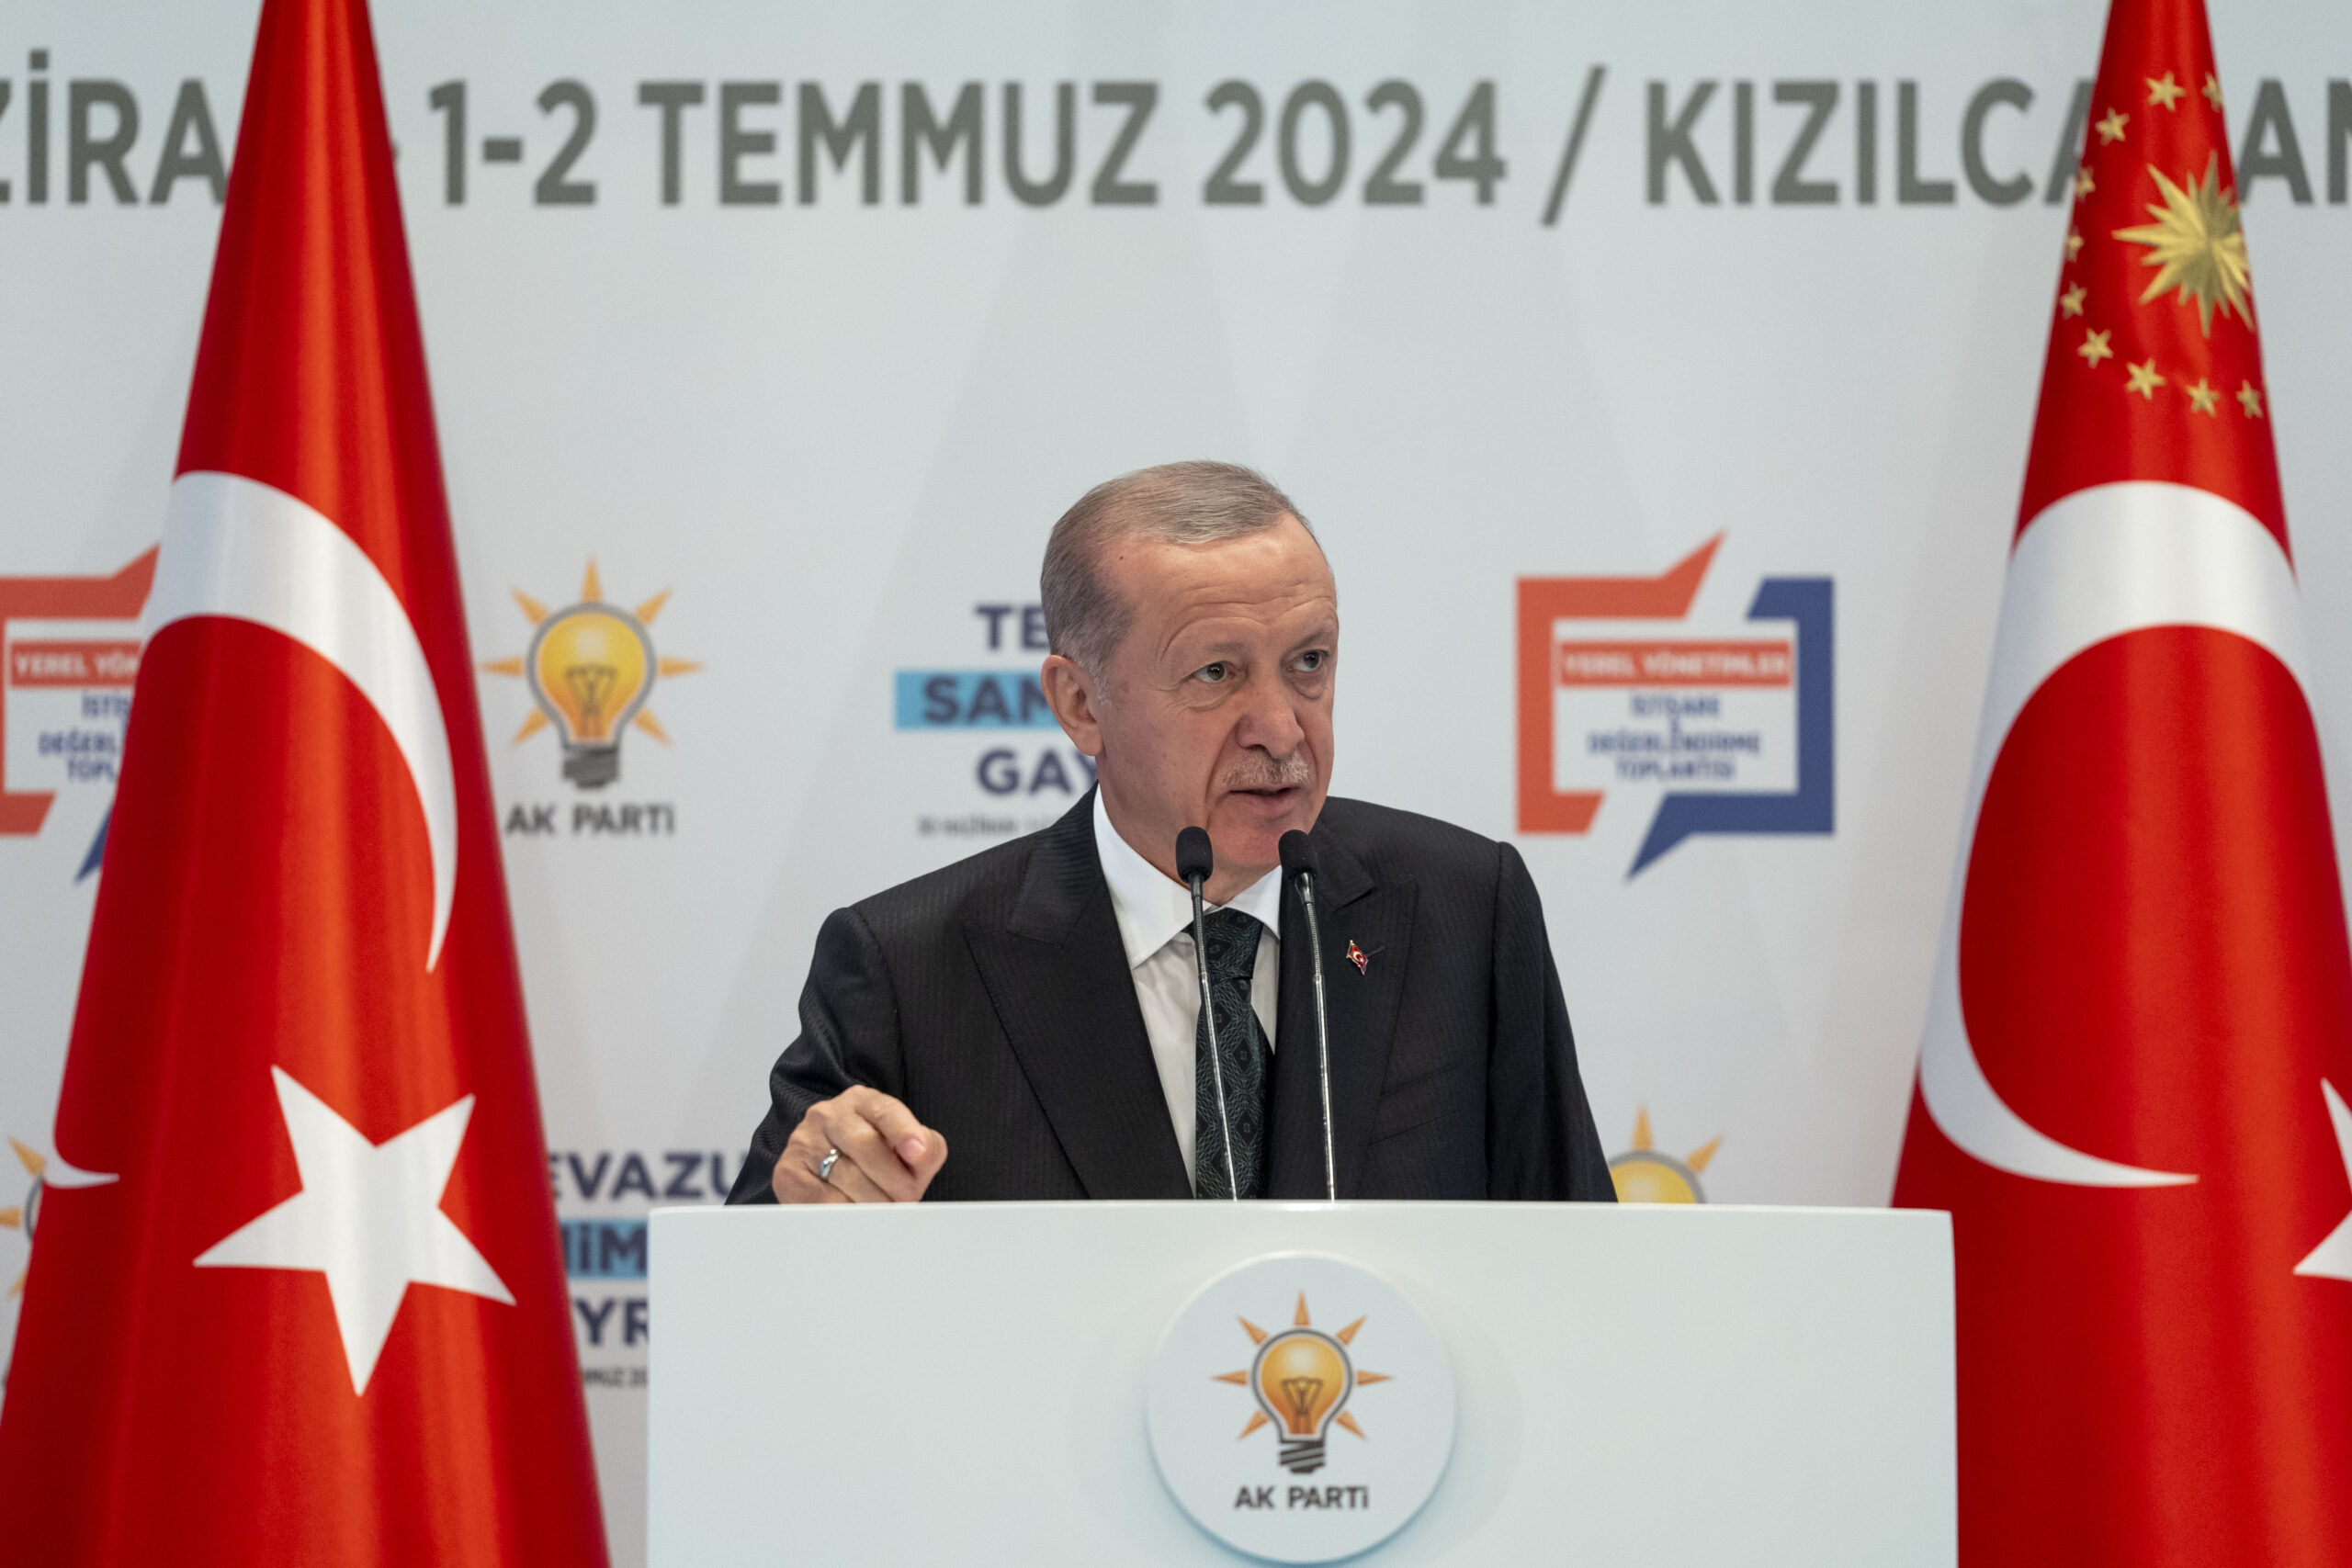 President Erdogan blames opposition for xenophobic rhetoric over Kayseri incidents